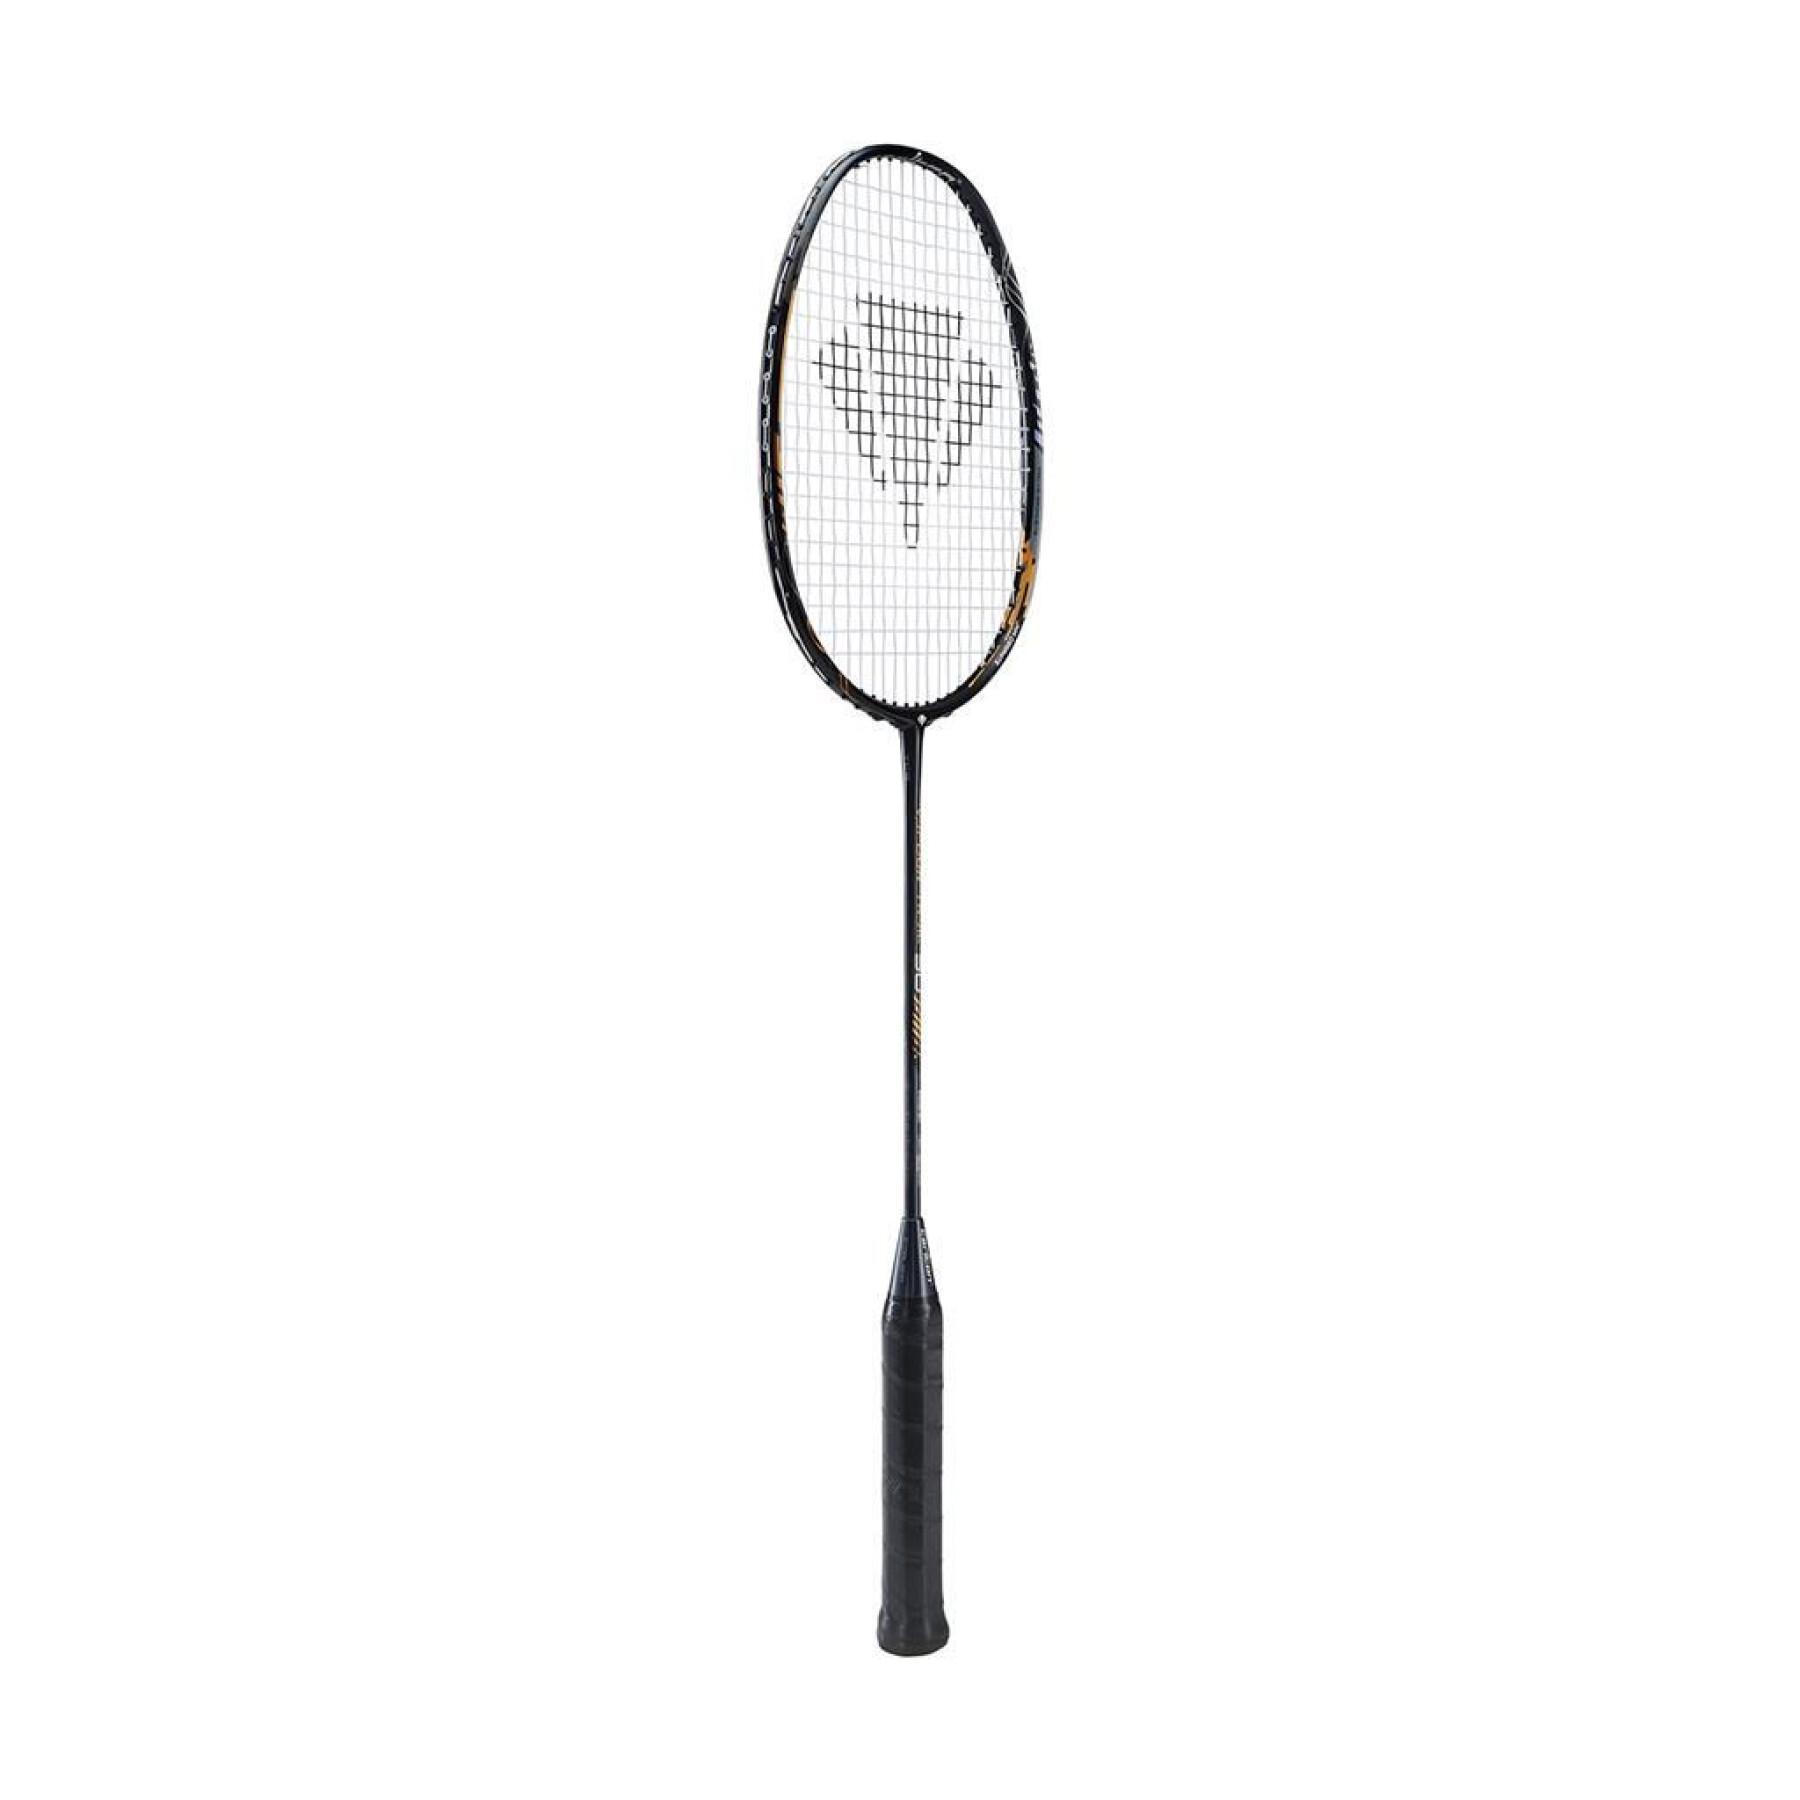 Raquete de Badminton Carlton Vapour Trail 90S G5 Hl Eu